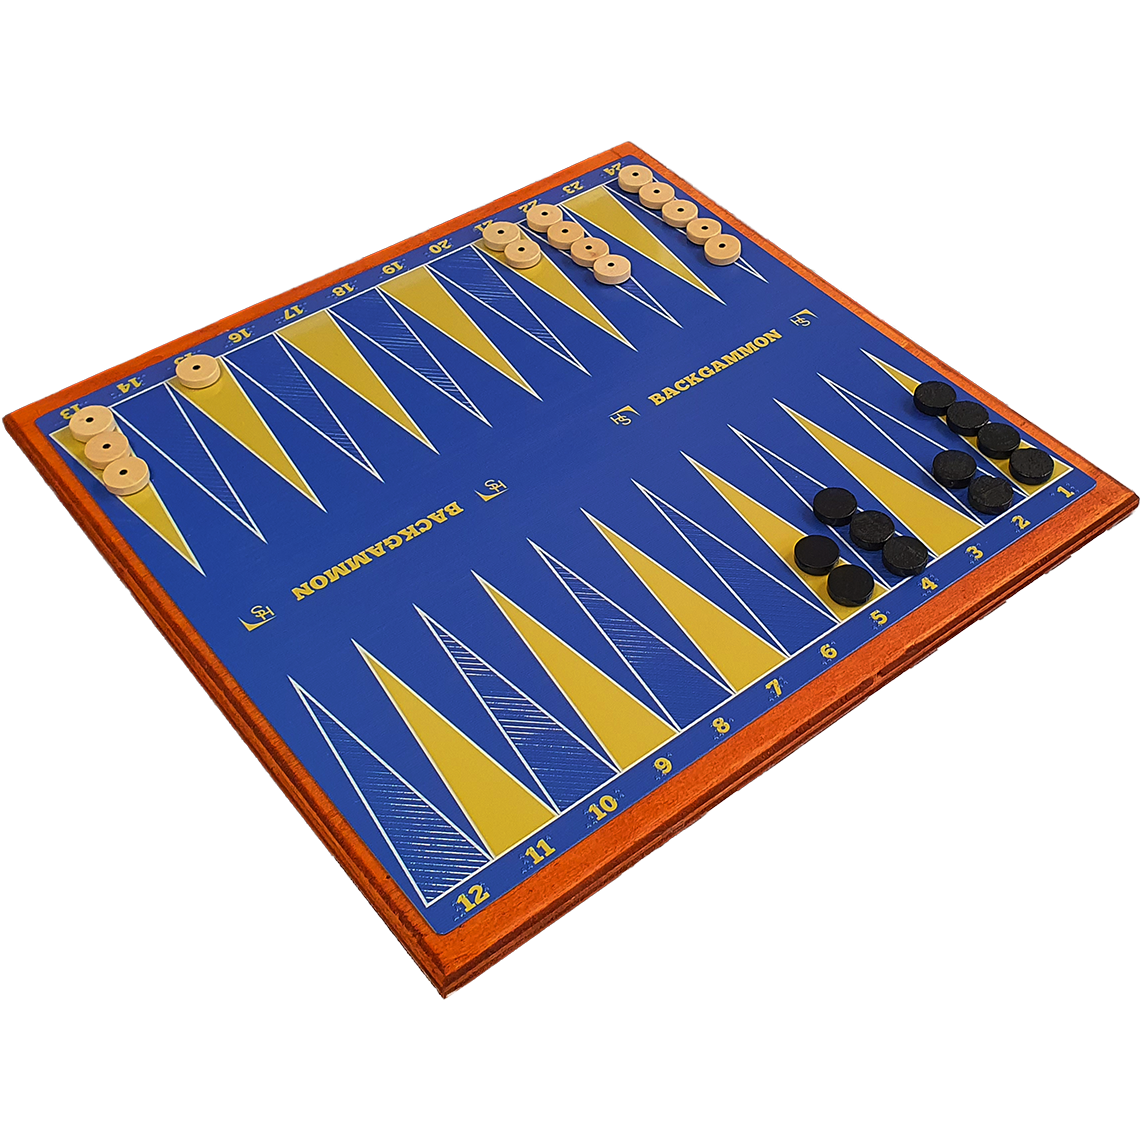 Backgammon magnetico a rilievo tattile e Braille -  iva 4% riservato ai possessori verbale invalidit